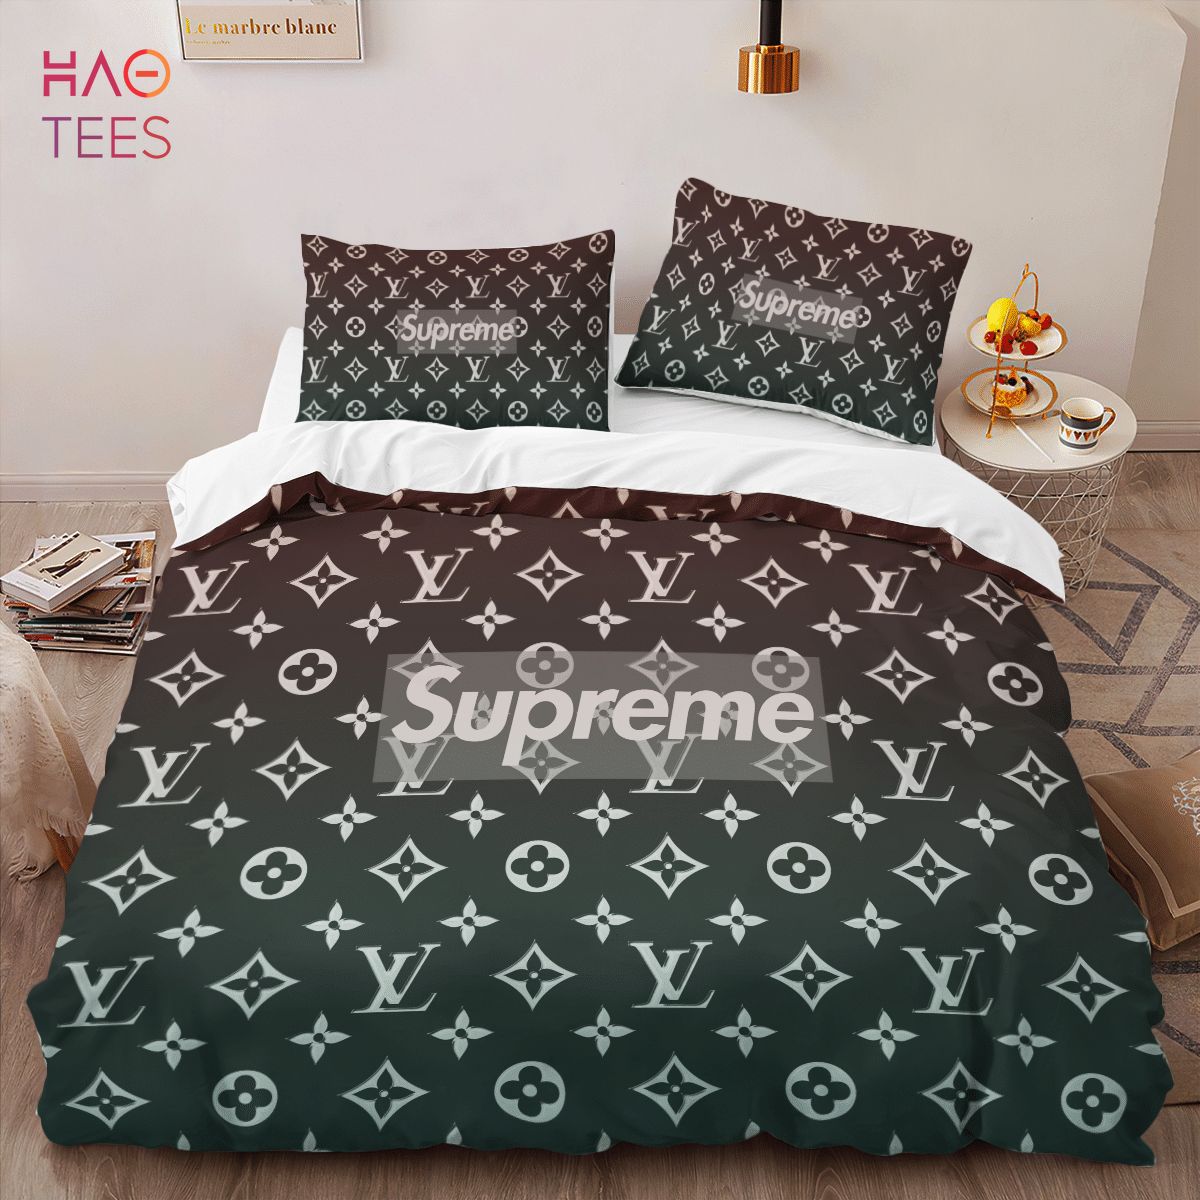 LV X Supreme Pillow